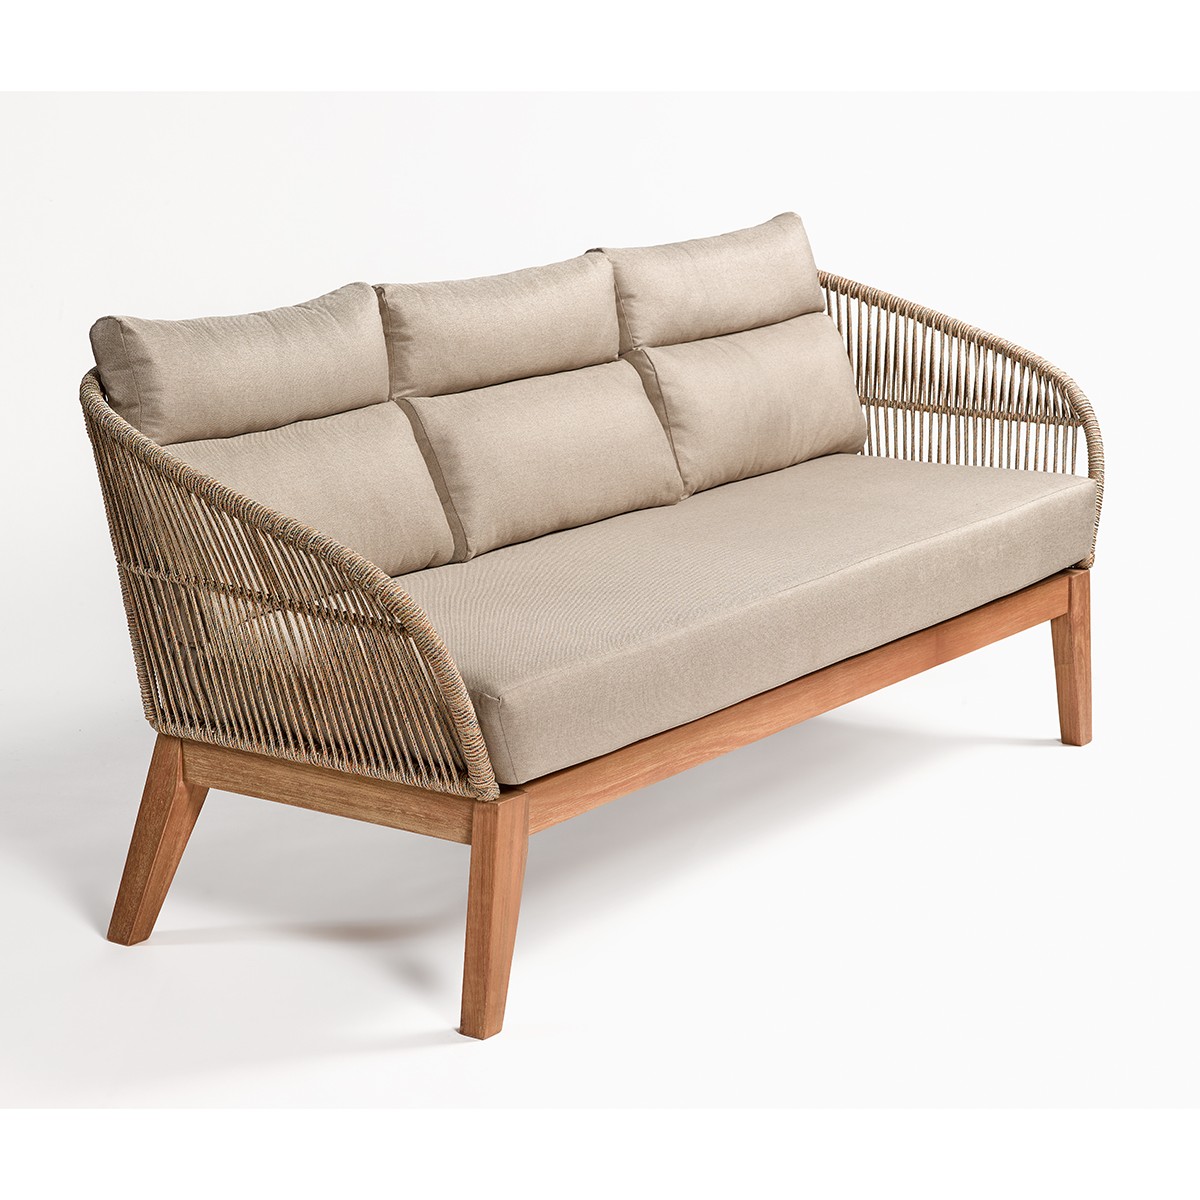 Sofa de madera y cuerda Foto: PALERMOSOFA-sofa-de-madera-y-cuerda